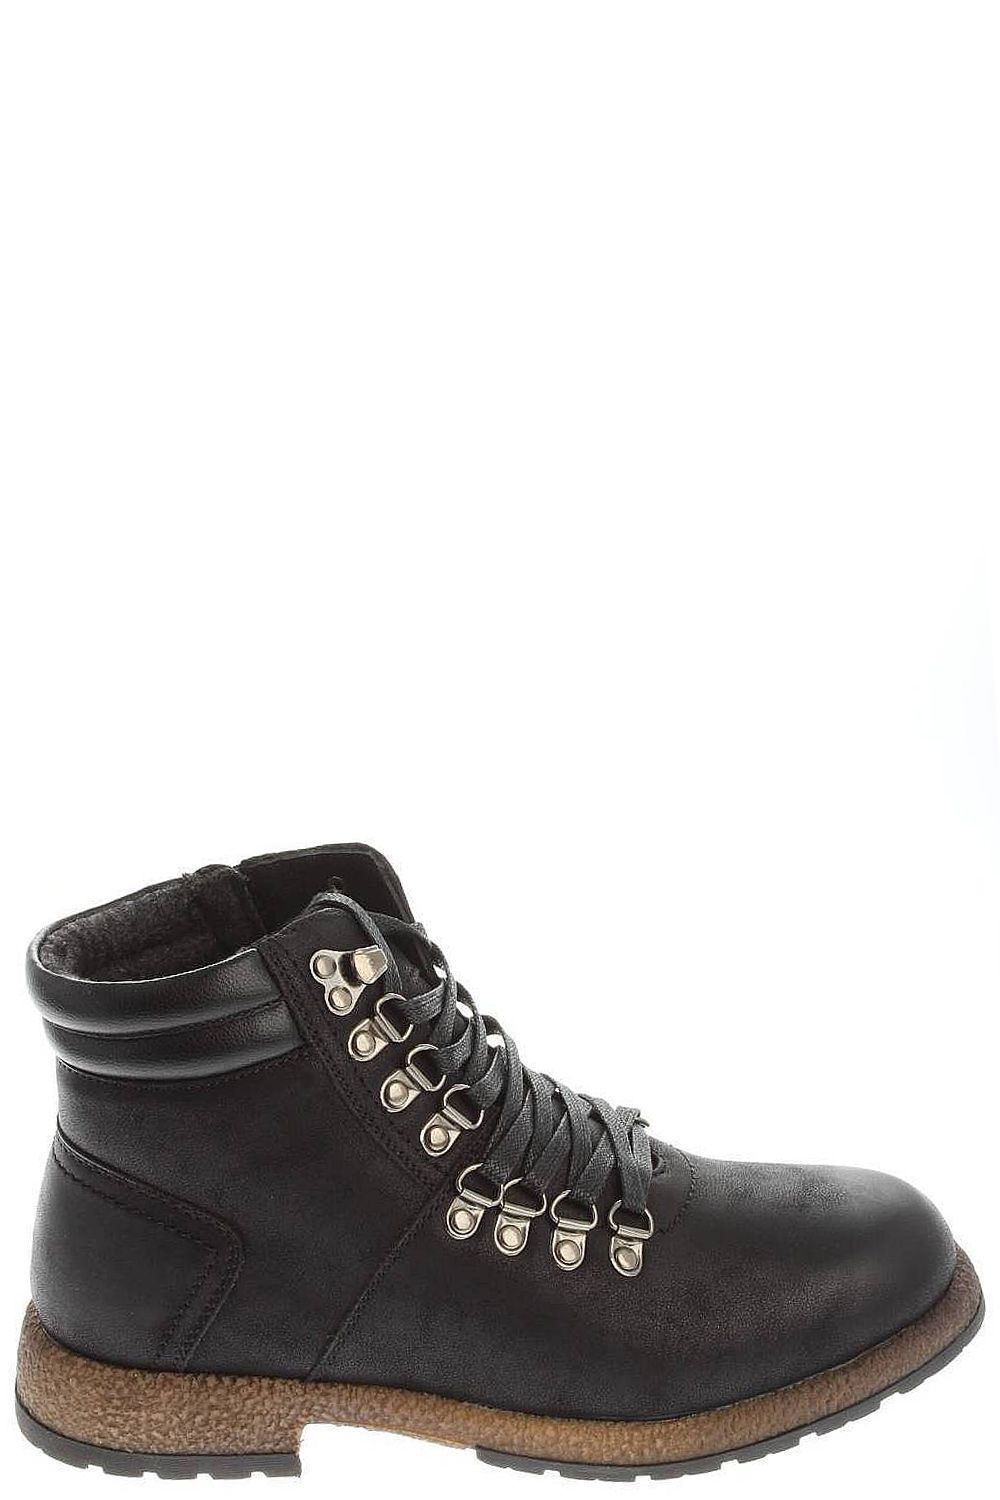 Ботинки Tesoro, размер 41, цвет черный 178668/12-01 - фото 5